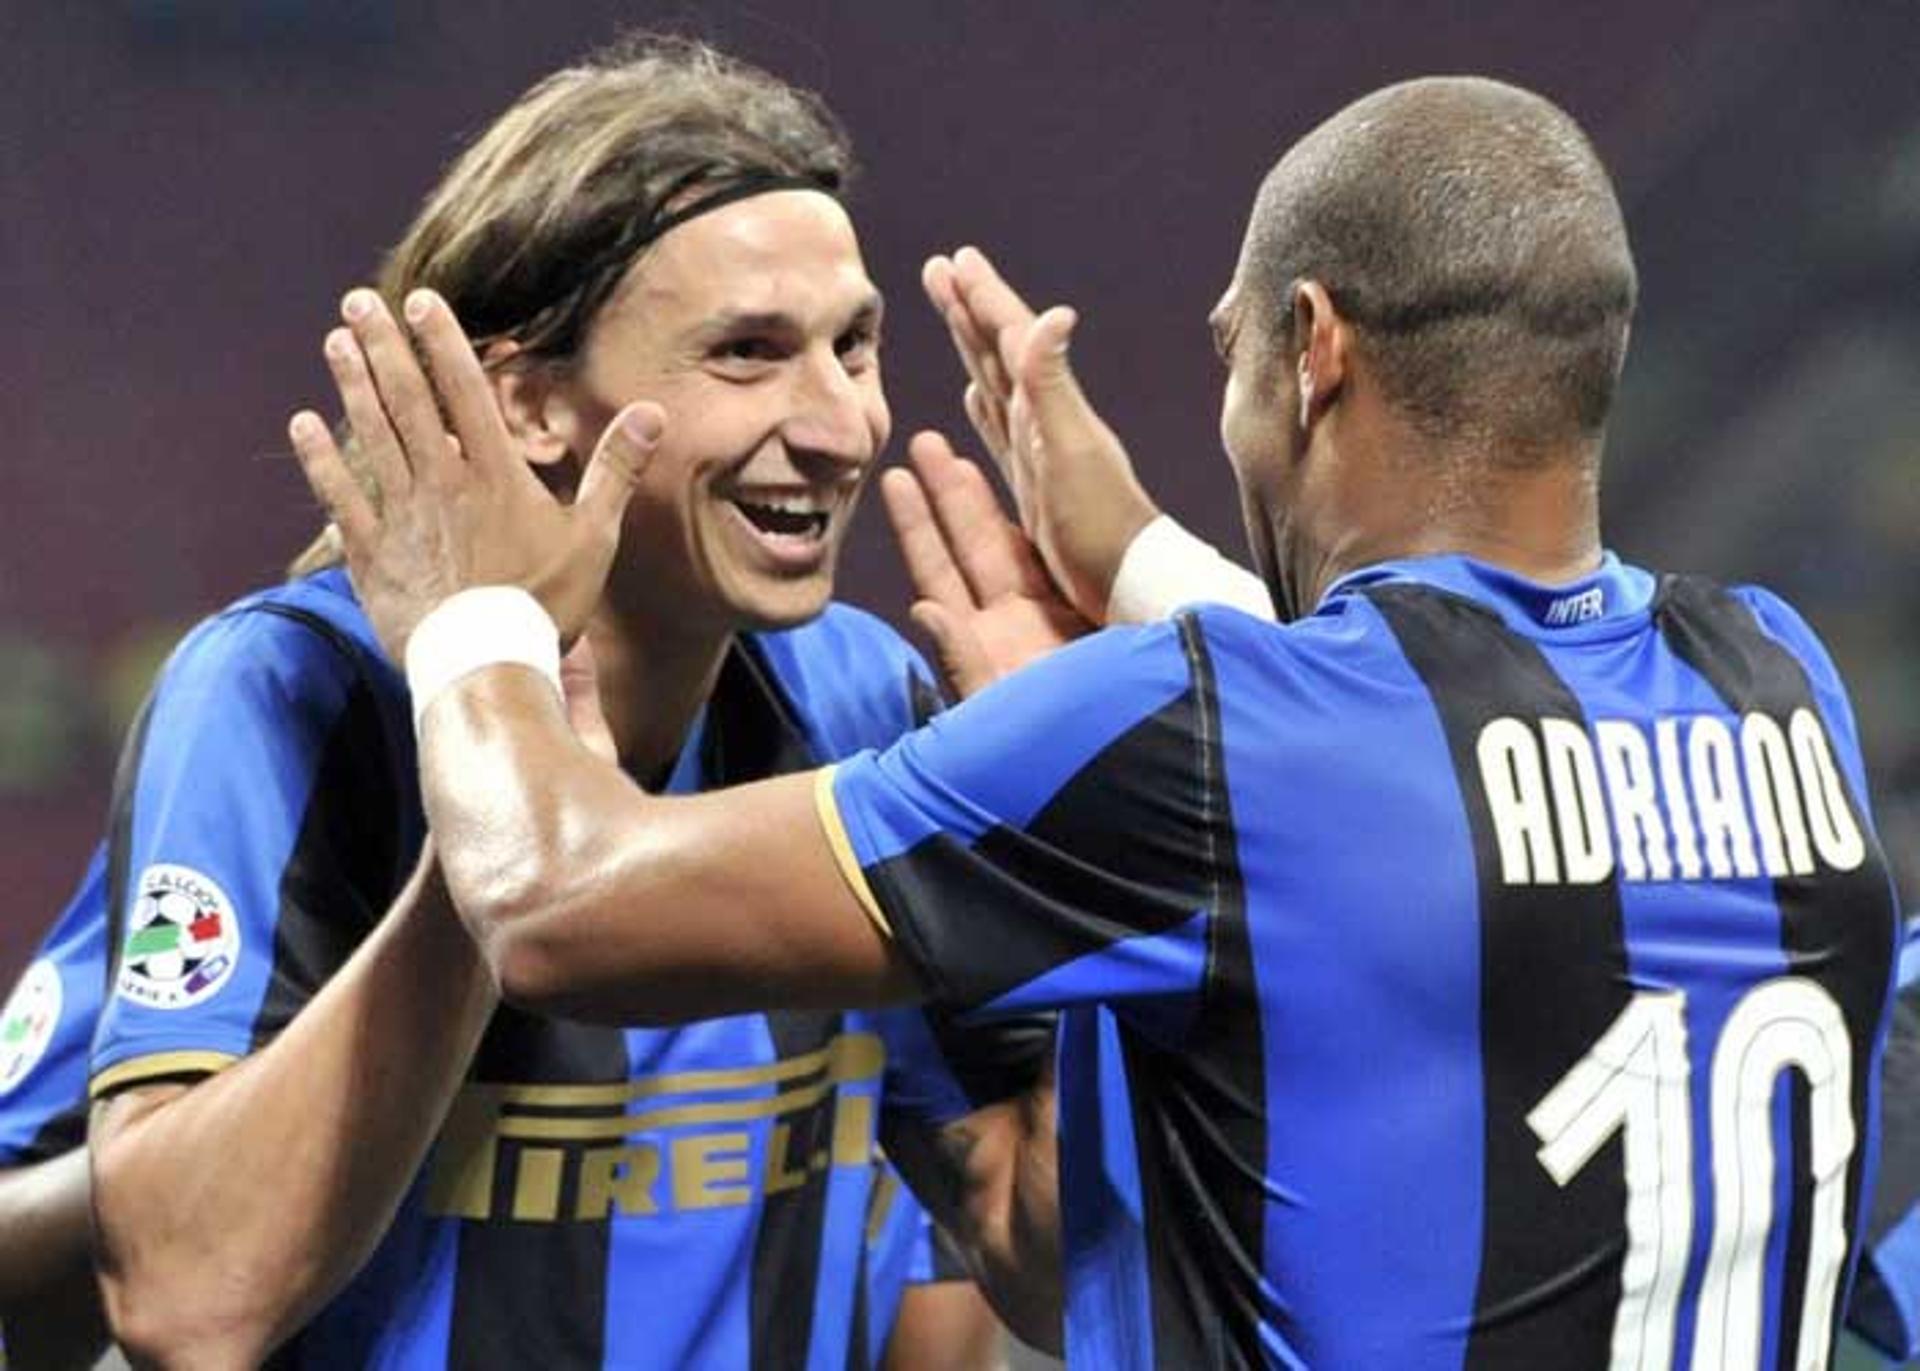 Ibra formou na Inter um poderoso ataque com Adriano e conquistou o tricampeonato italiano